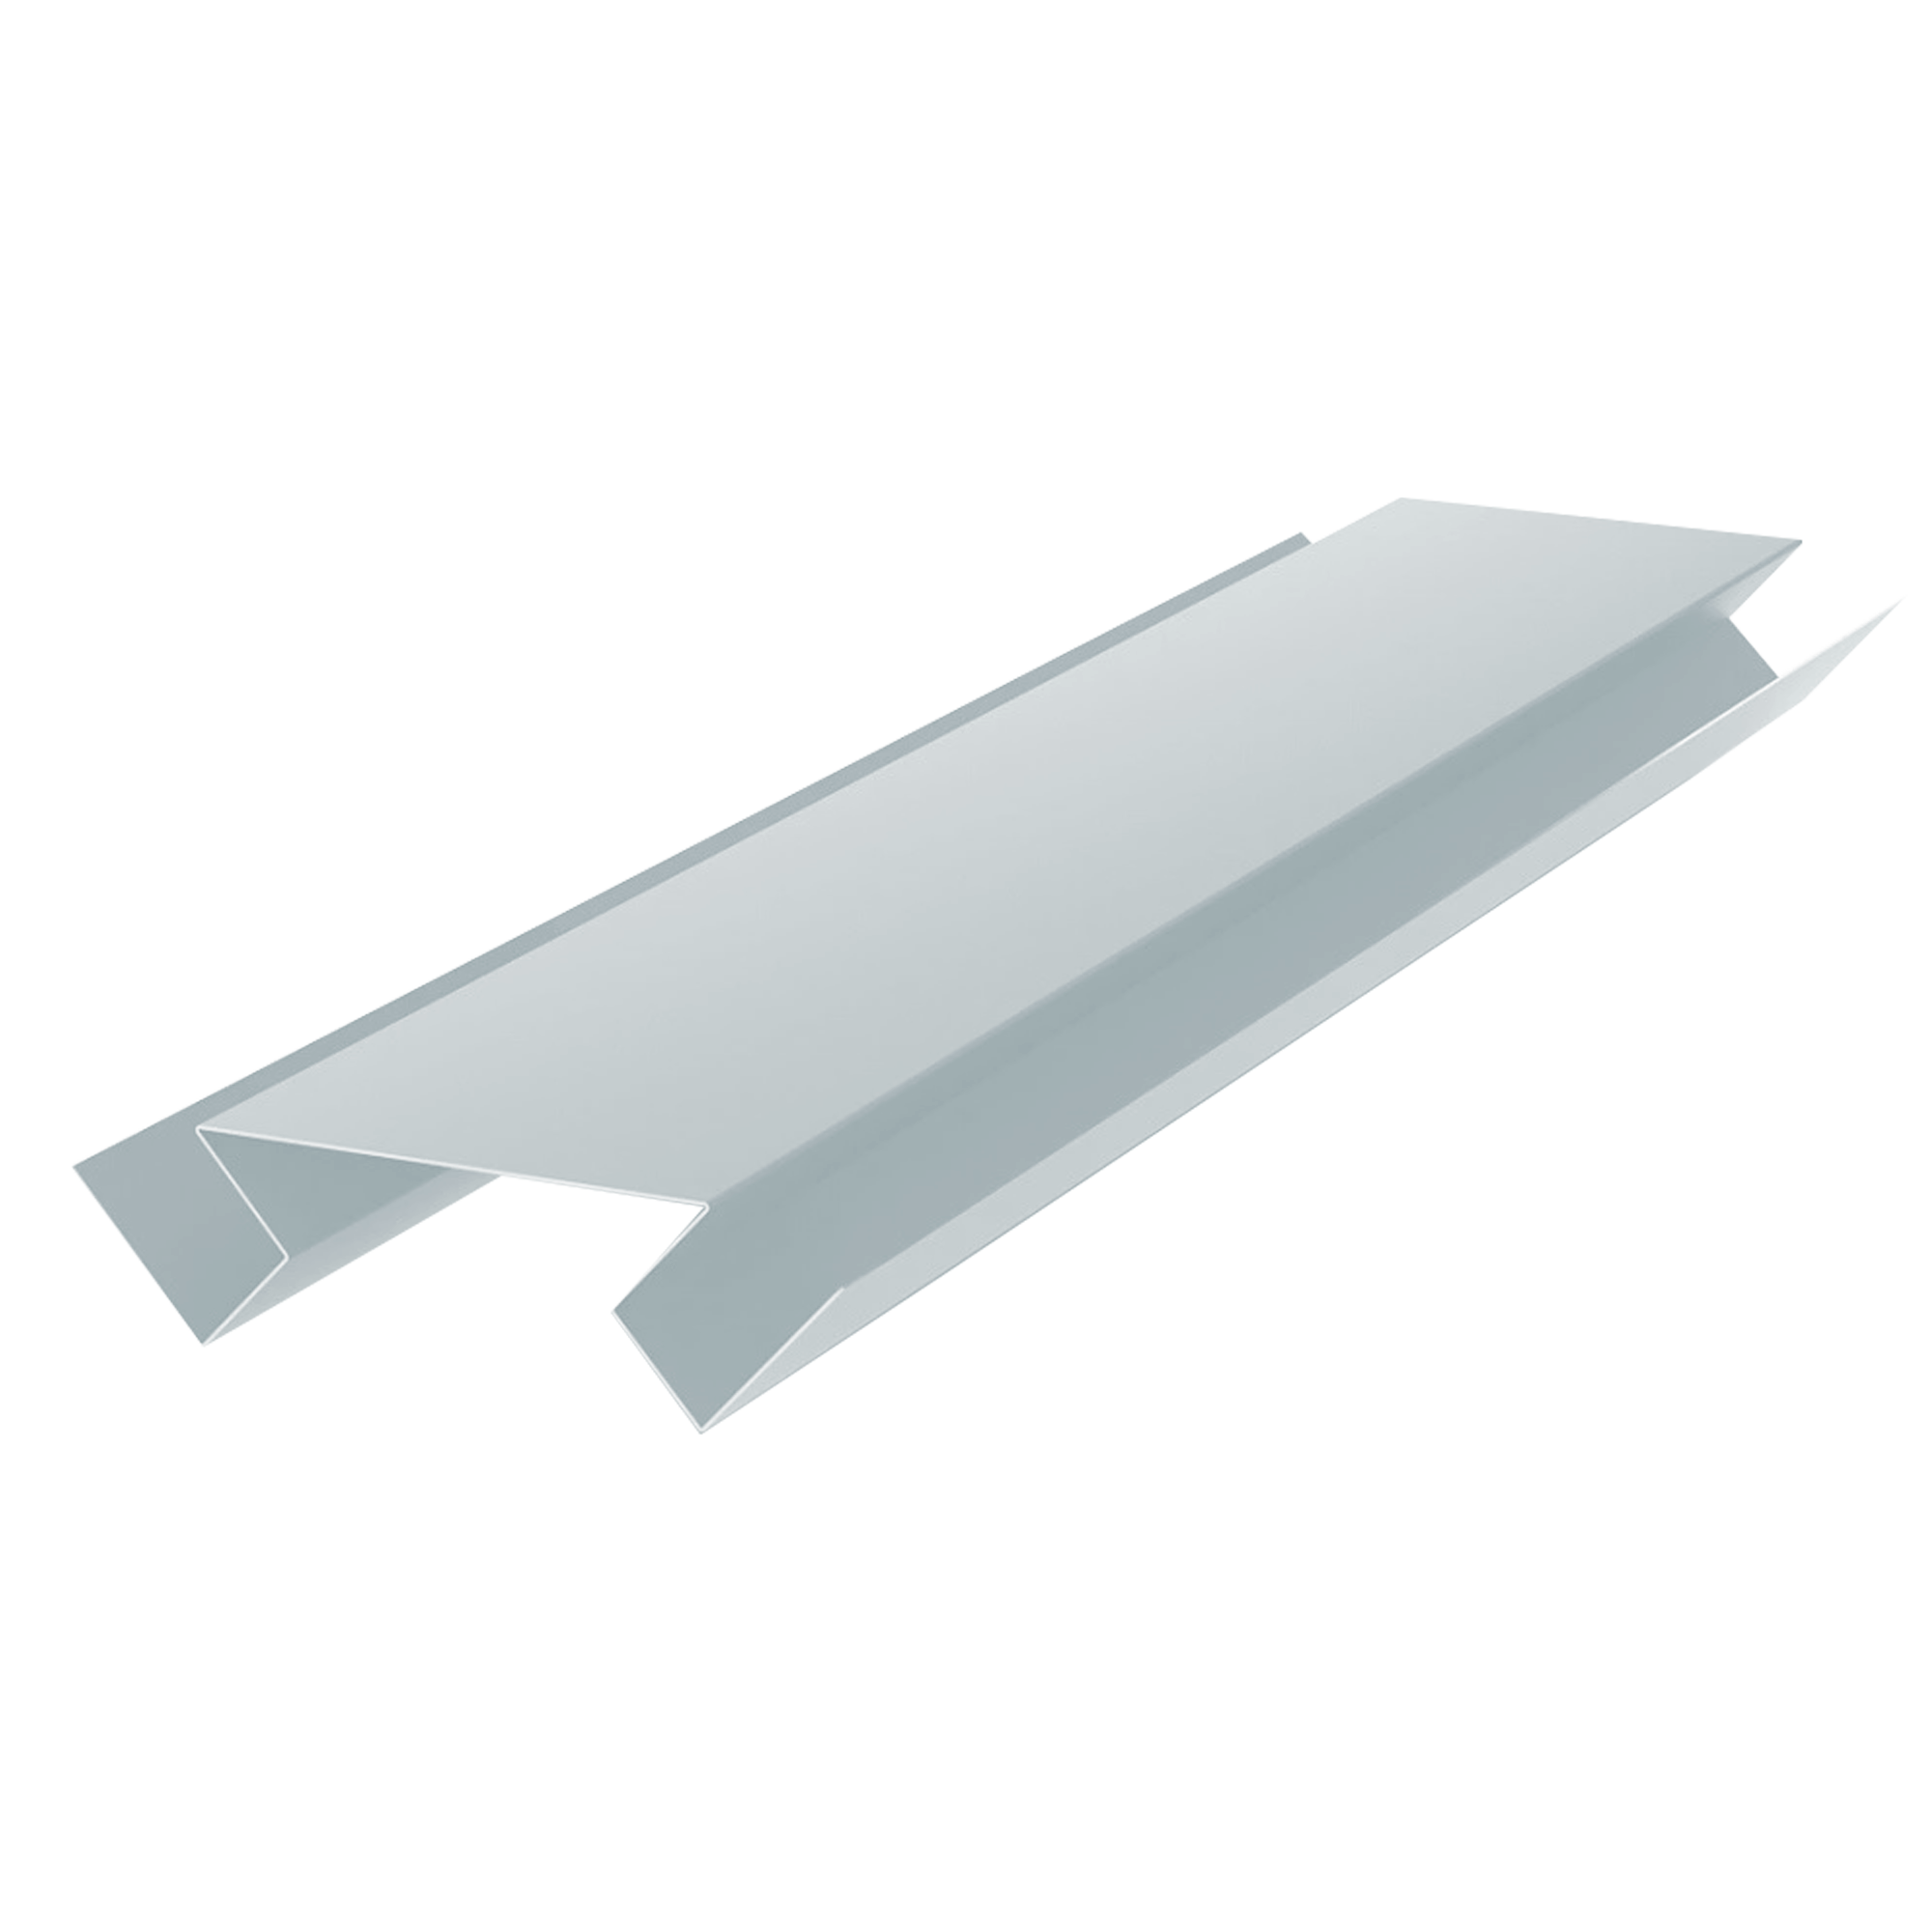 Планка угла внутреннего сложного Брусnika Светло-серый 0,45 мм Полиэстер Доборные элементы для сайдинга Кровля Сервис